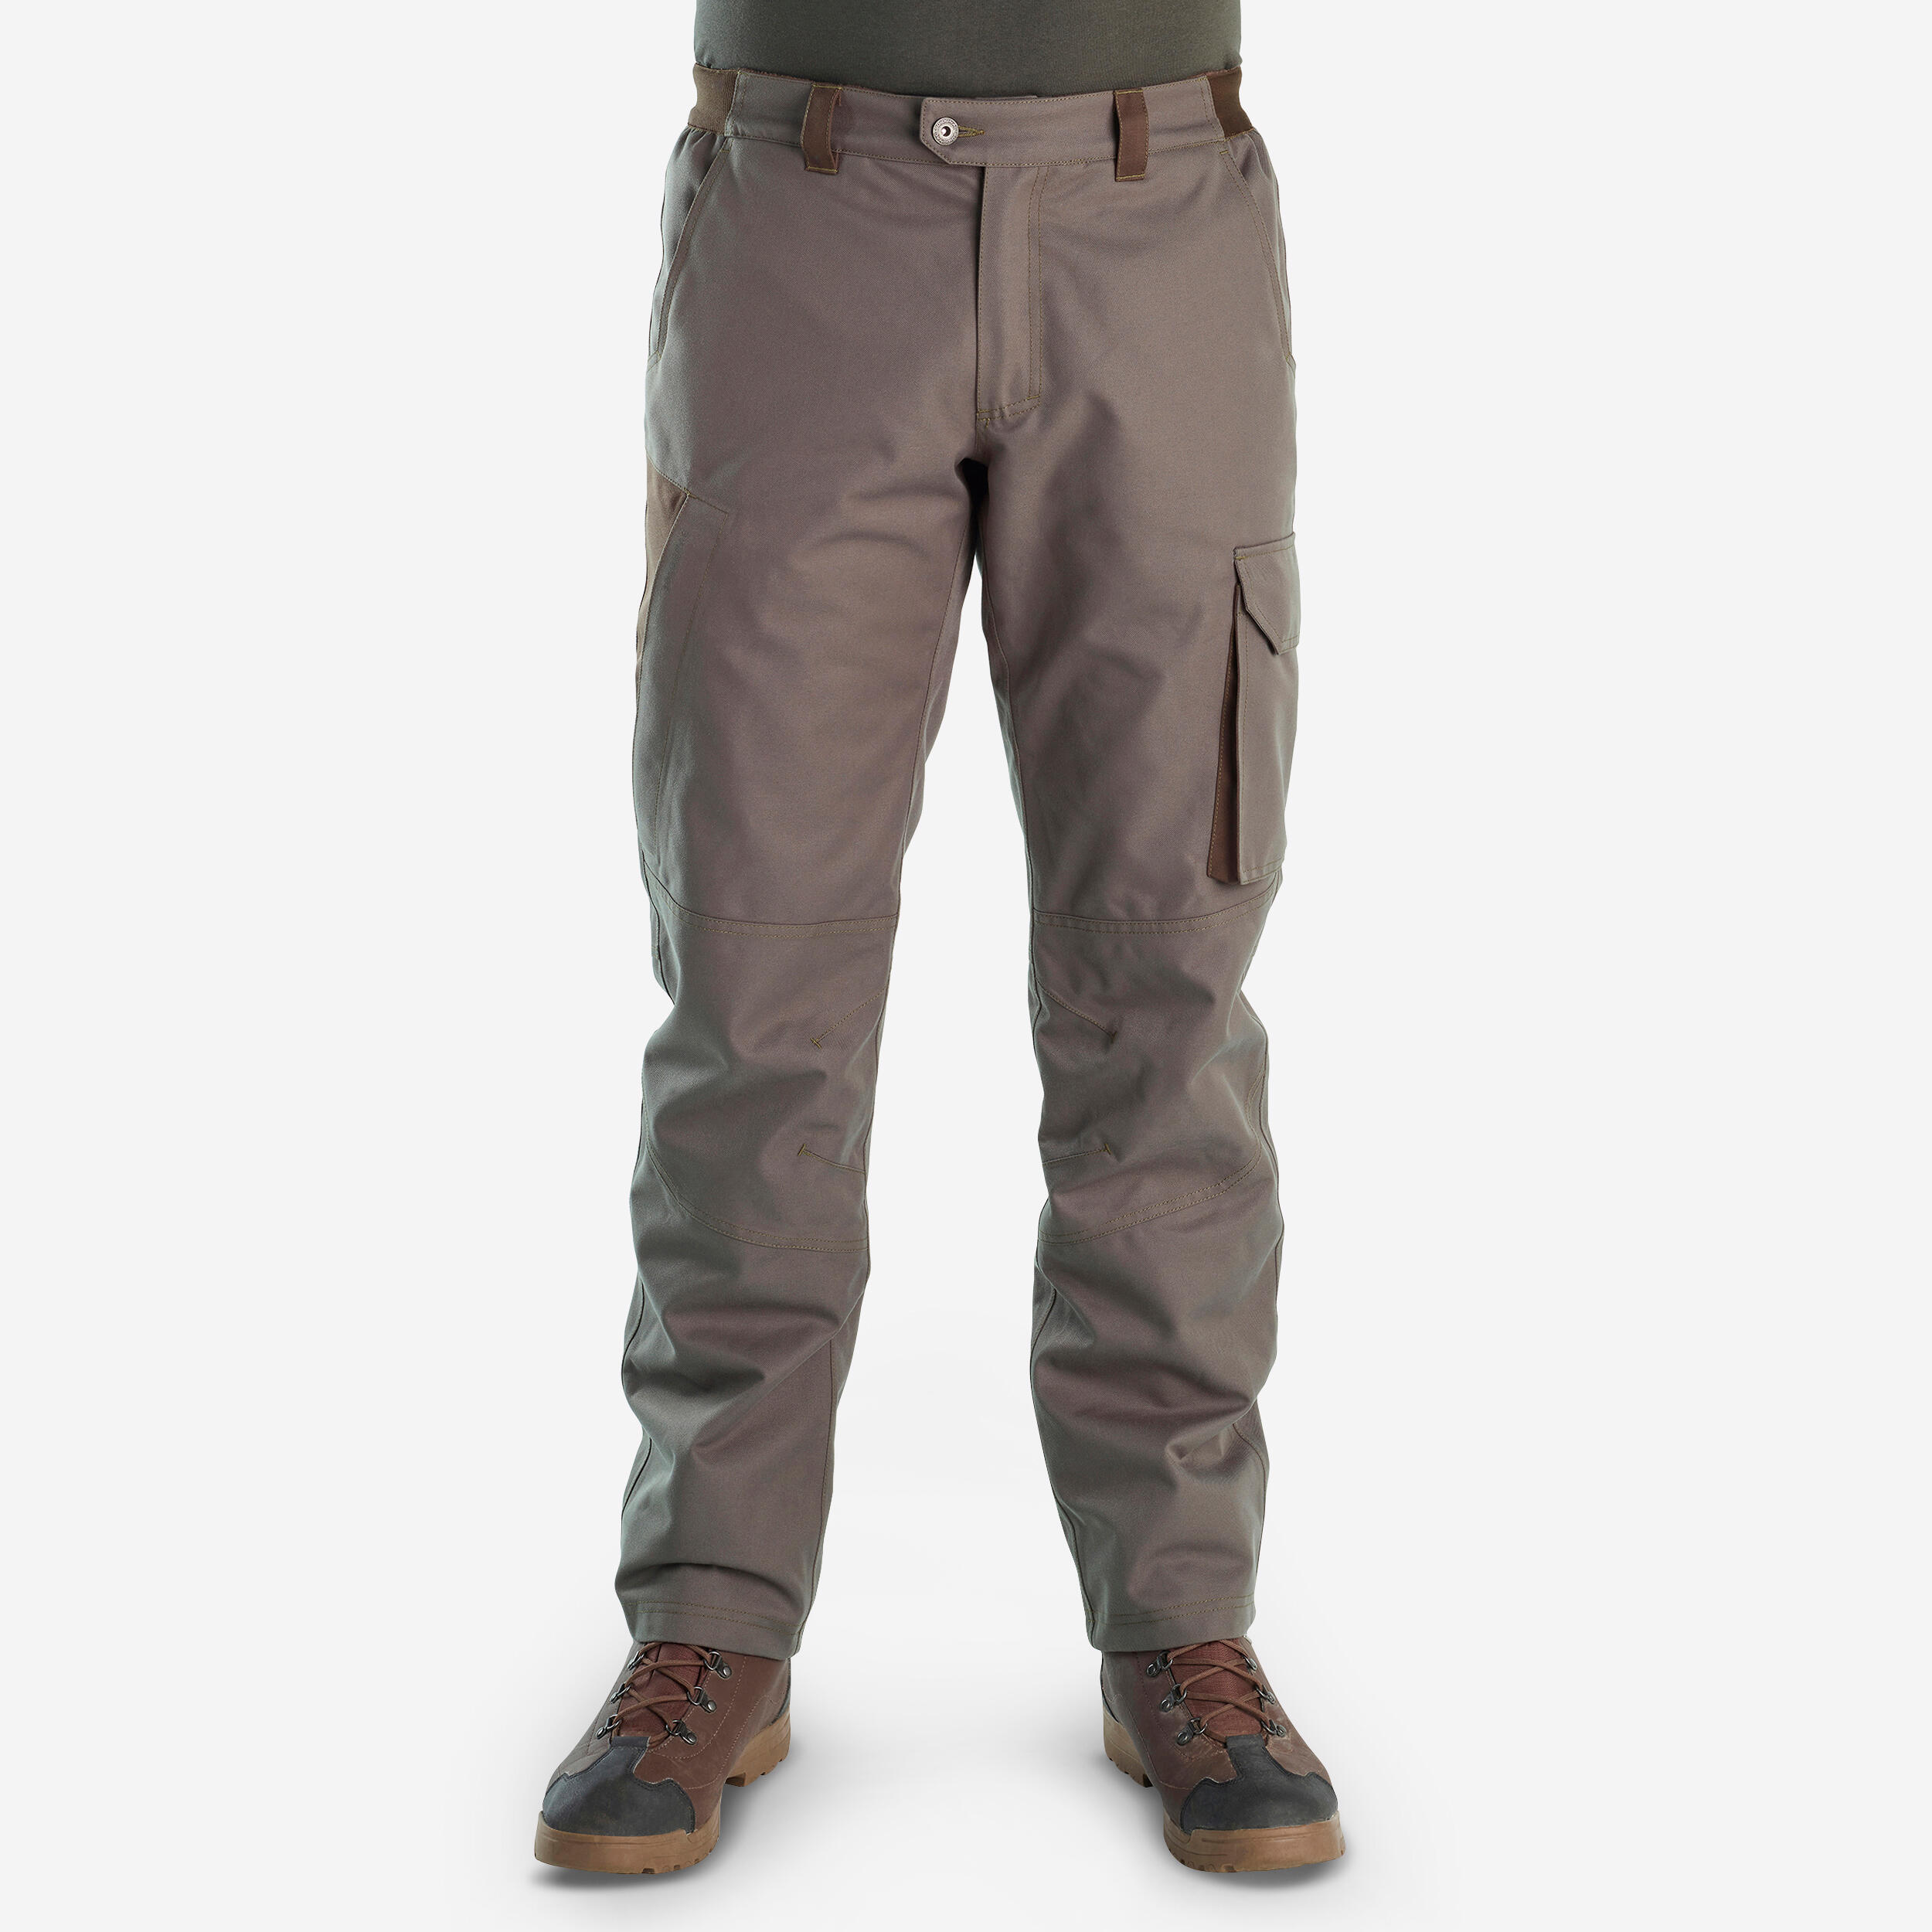 Hunting Warm Waterproof Pants - 500 Green - Black olive, Deep